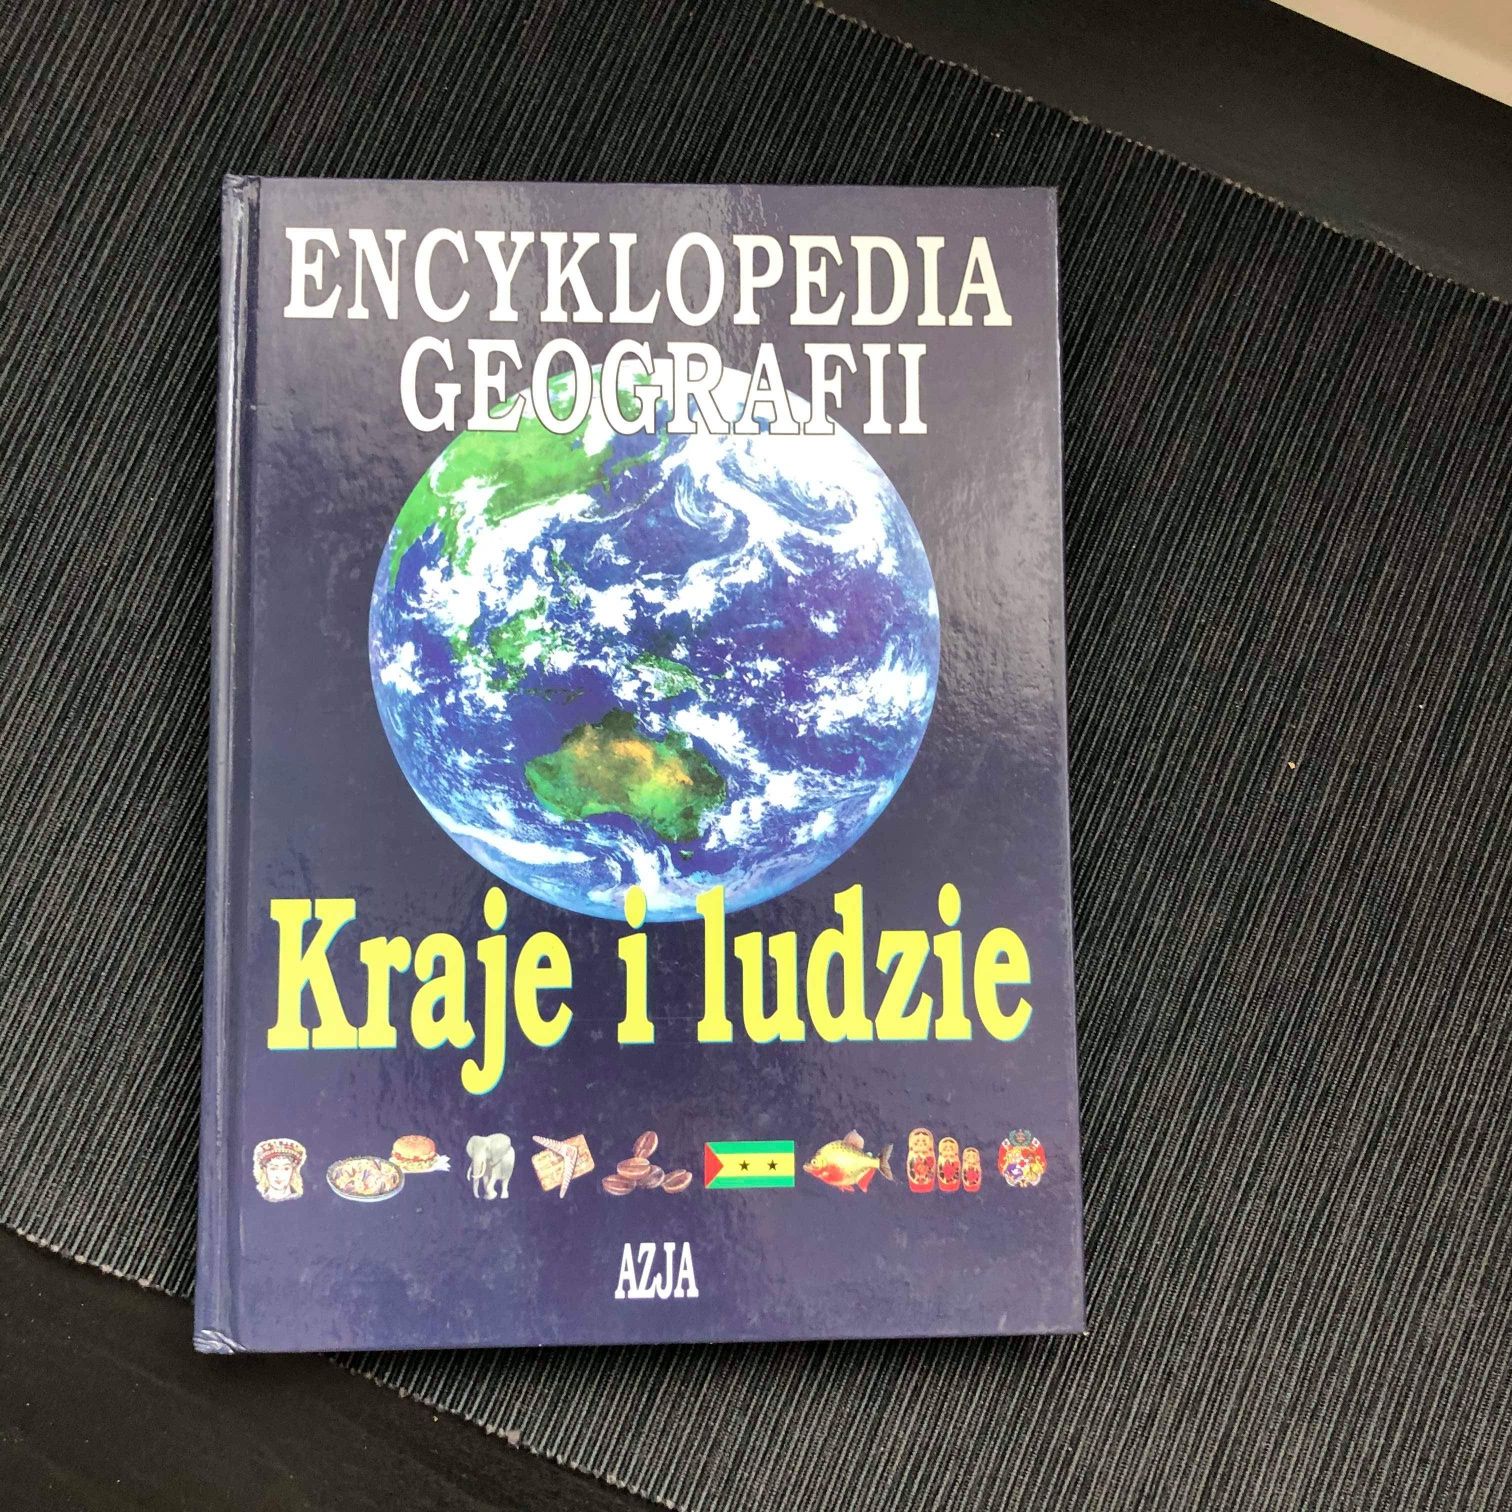 ENCYKLOPEDIA GEOGRAFII Kraje i Ludzie ilustrowana 2 kontynenty album